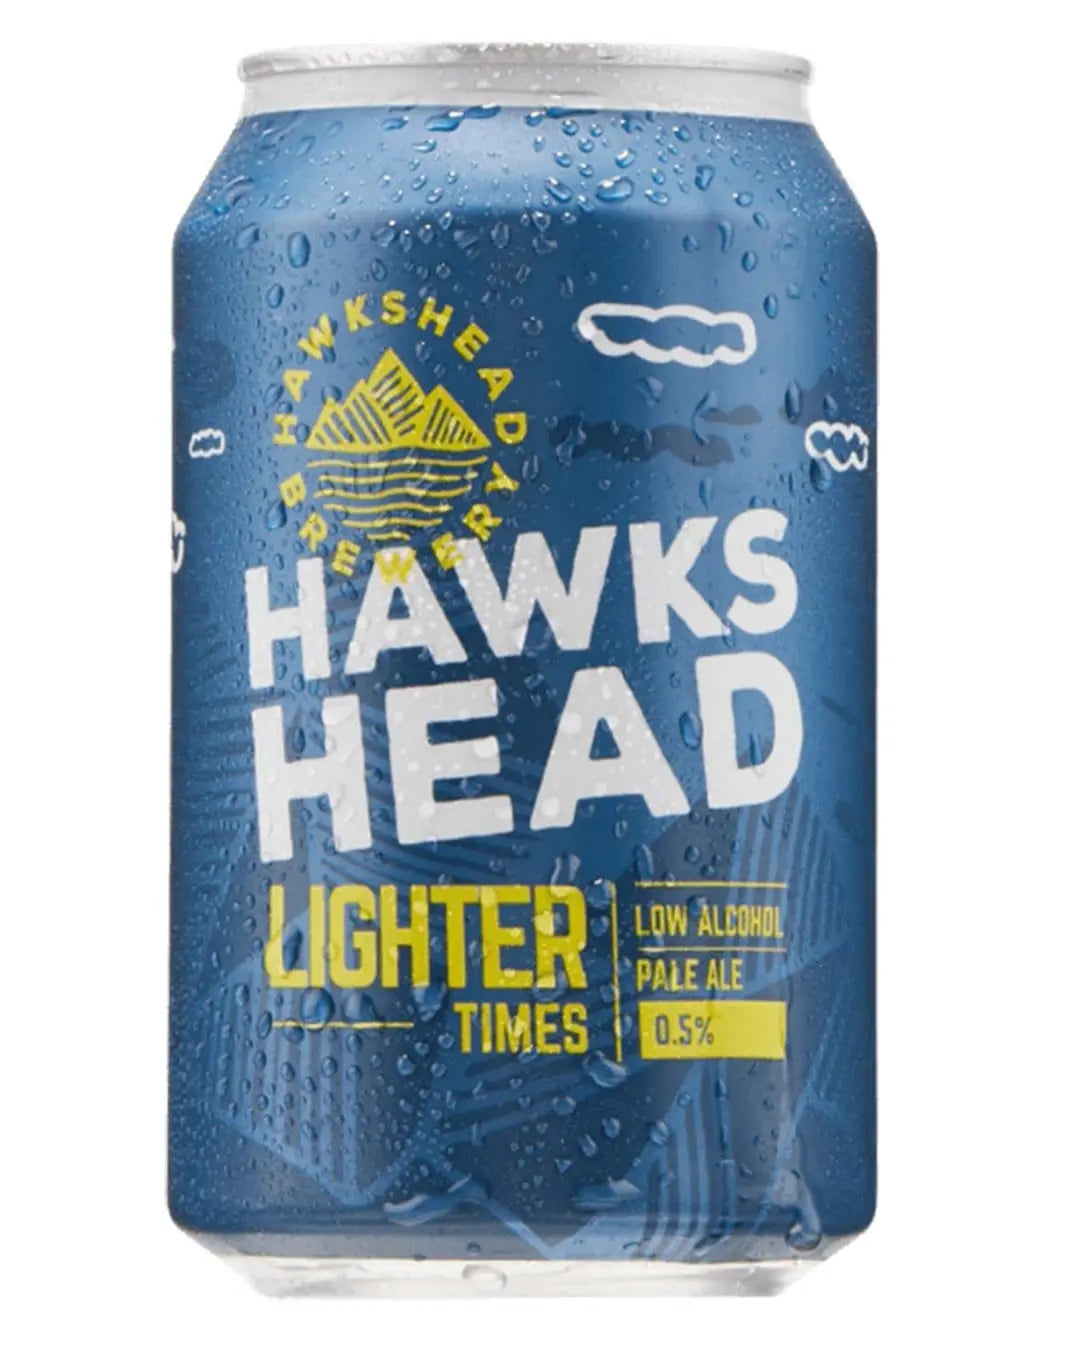 Hawkshead Lighter Times Ale Beer Can, 330 ml Beer